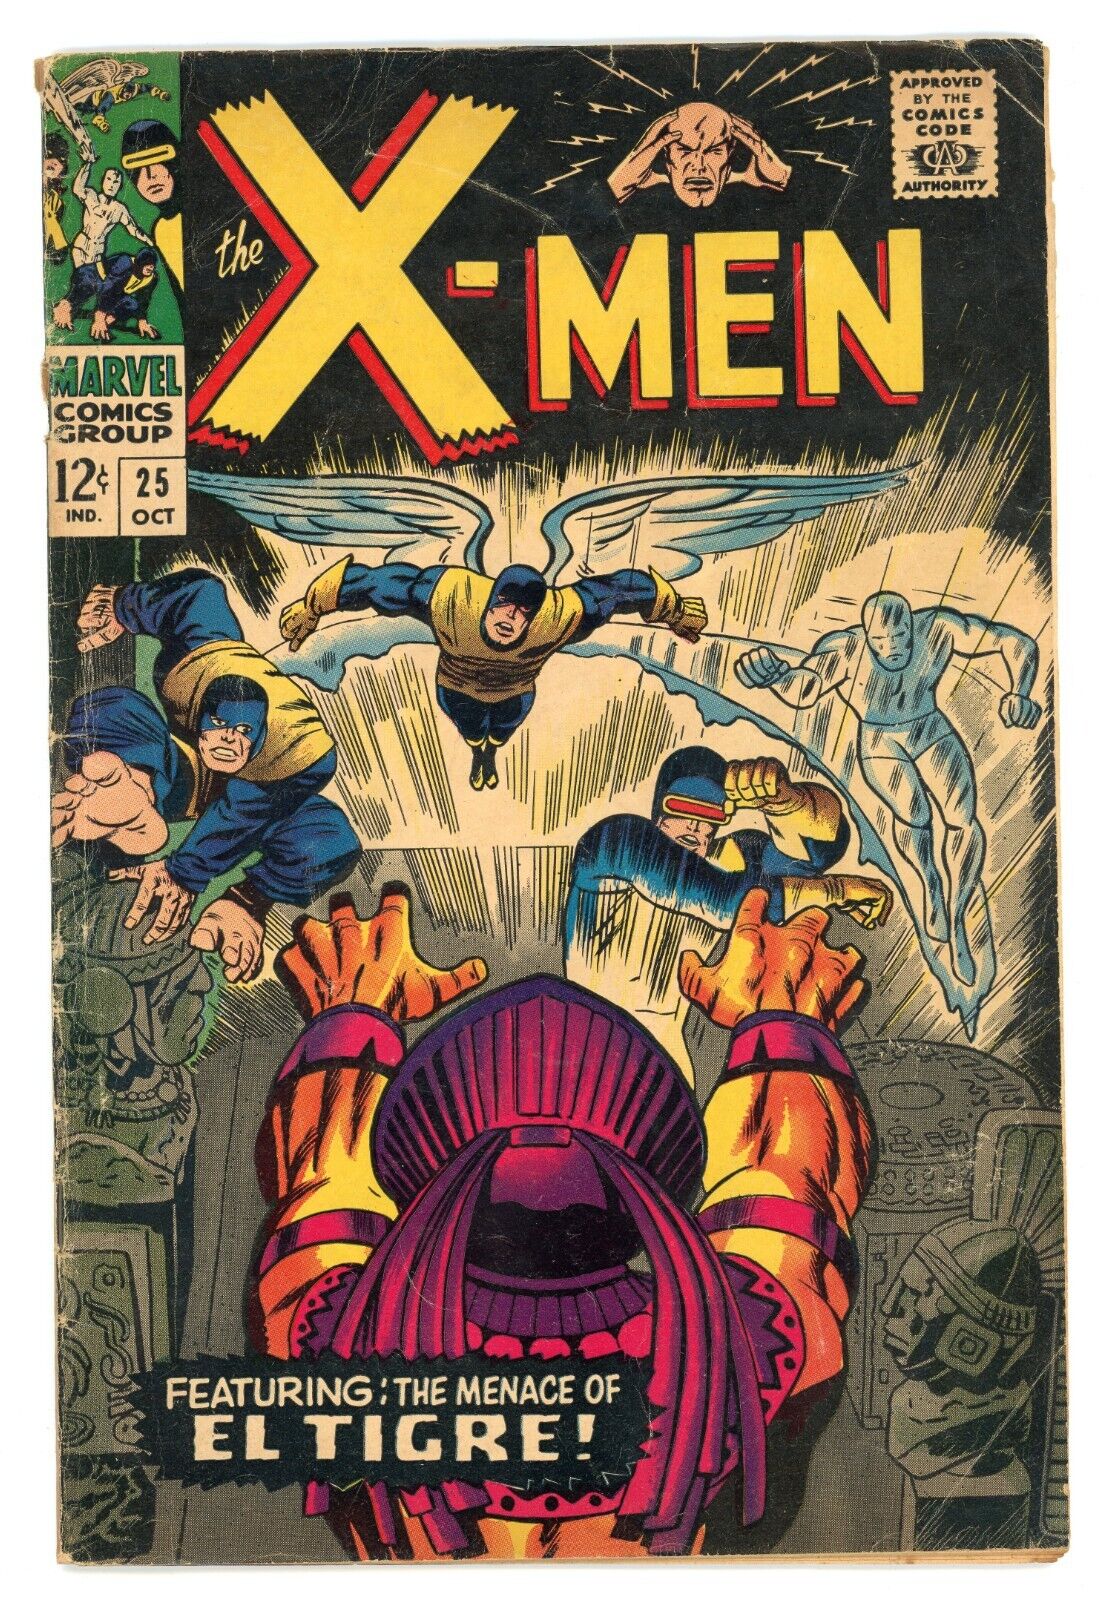 The X-Men #25 Marvel Comics 1966